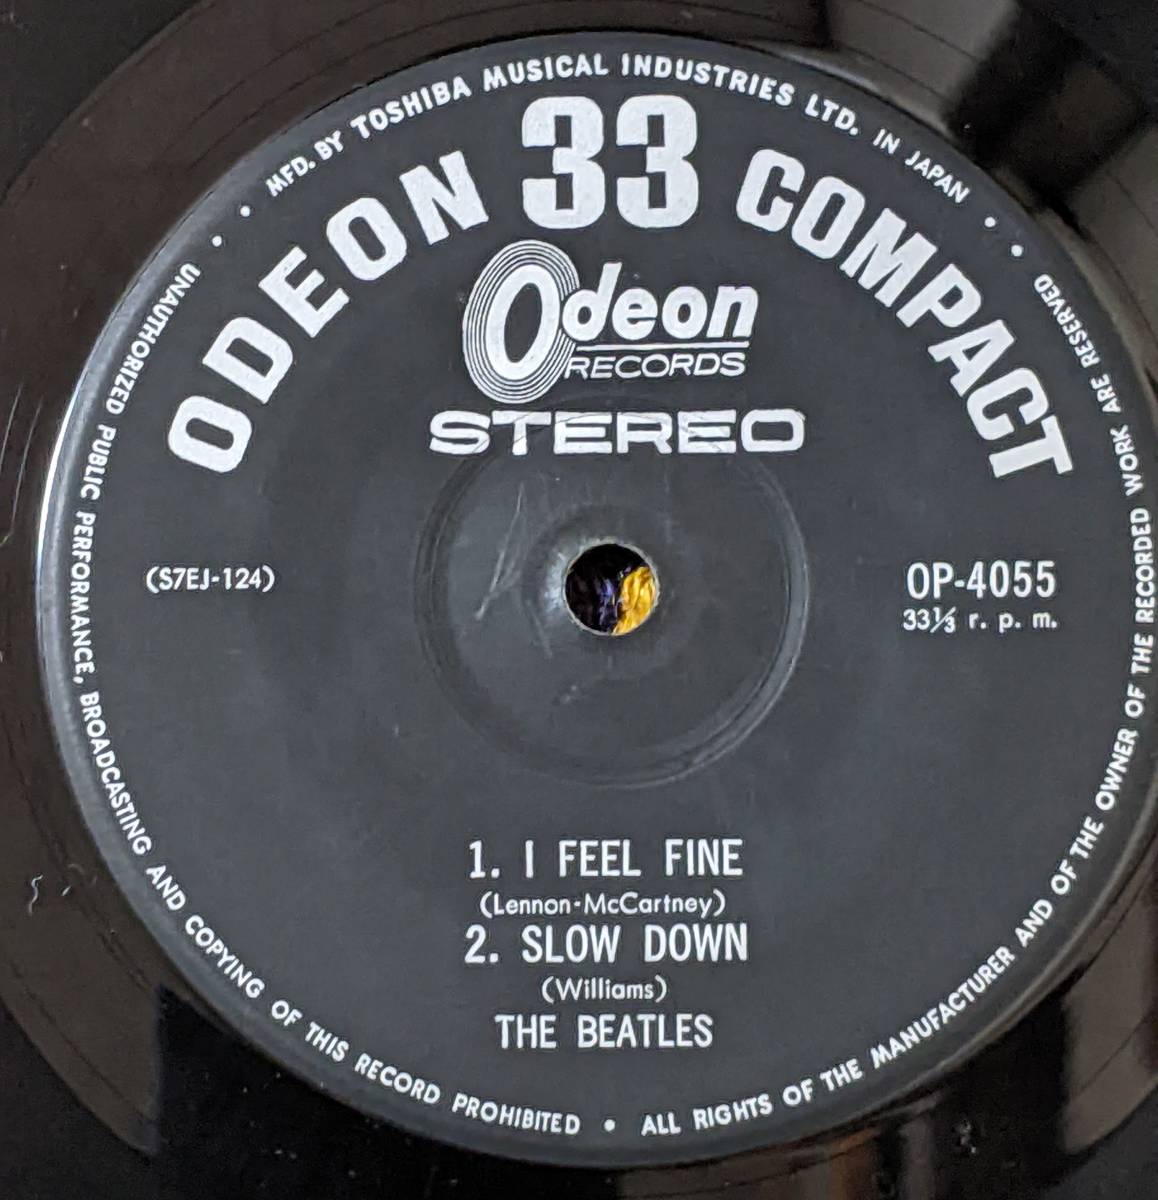 60's ビートルズ (\500 Odeon盤 4曲入EP)/ のっぽのサリー マッチボックス アイ・フィール・ファイン スロー・ダウン OP-4055 1964年_画像8